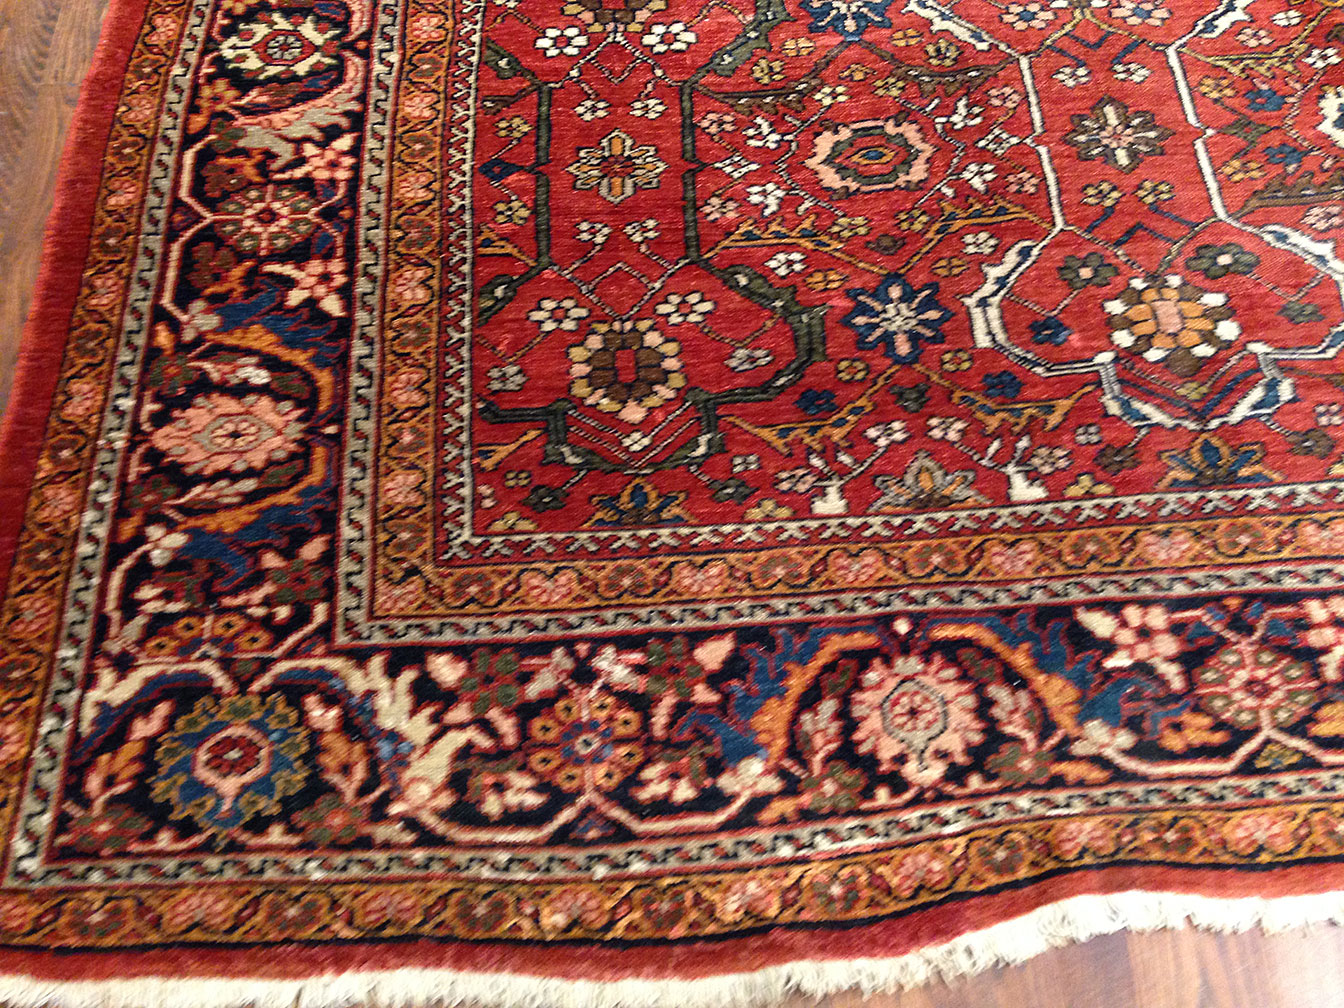 Antique mahal Carpet - # 99364